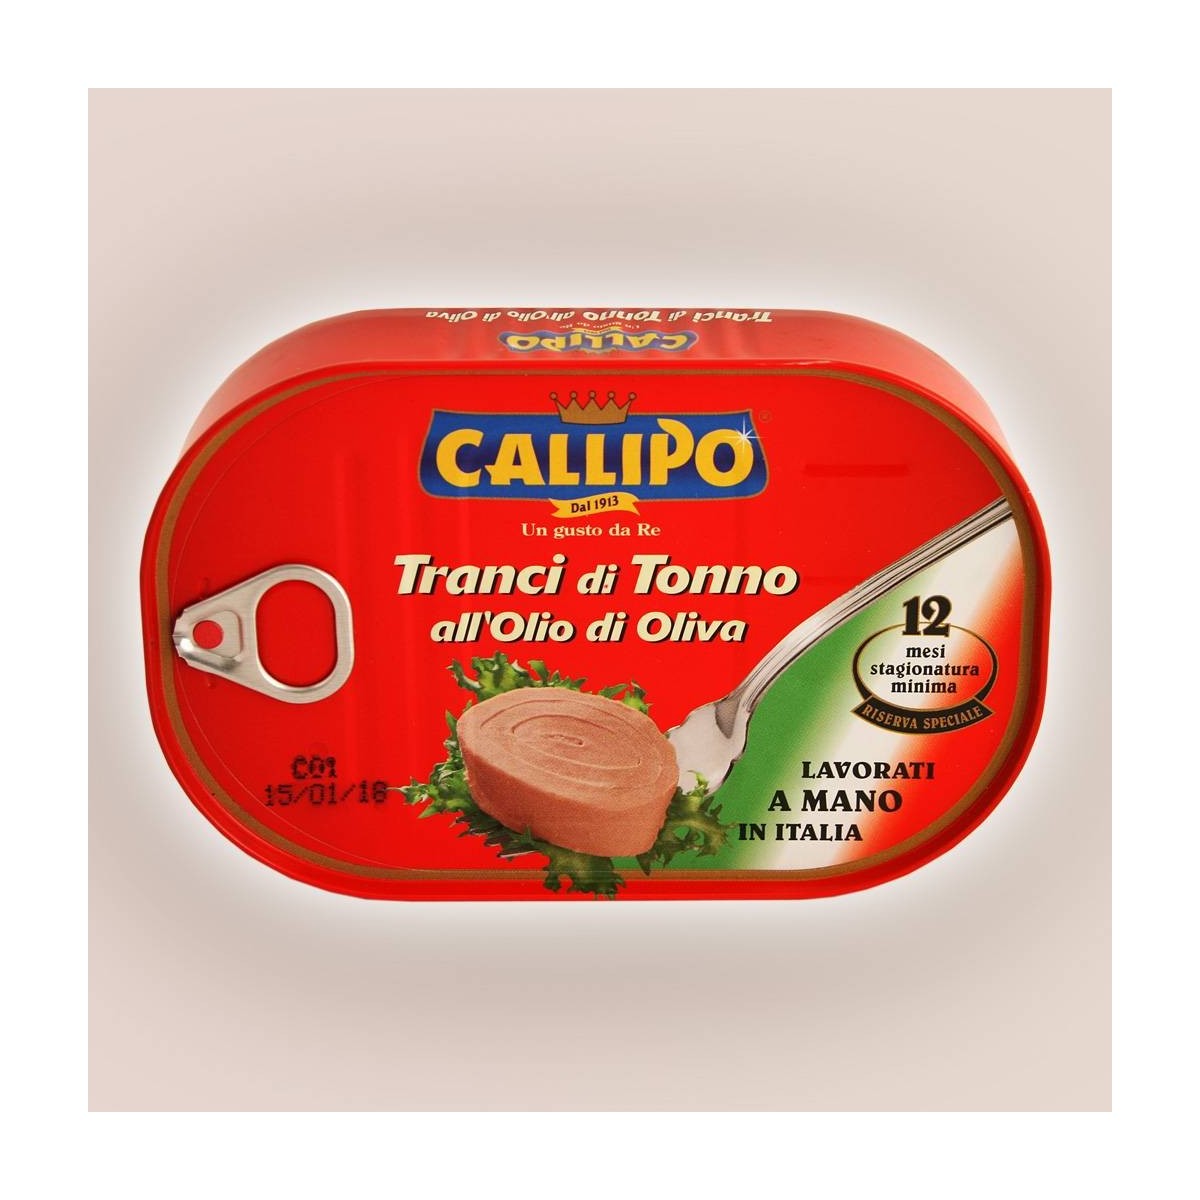 Tranci di tonno all'olio d'oliva riserva speciale Callipo